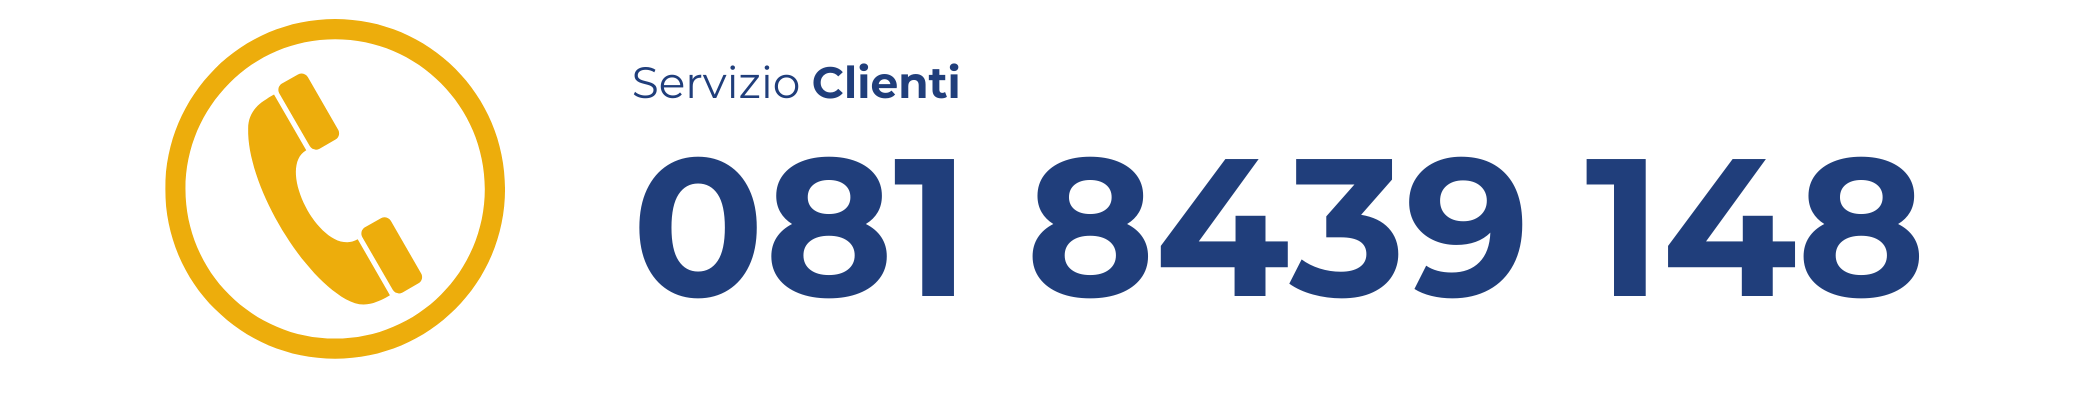 Logo_Servizio_clienti